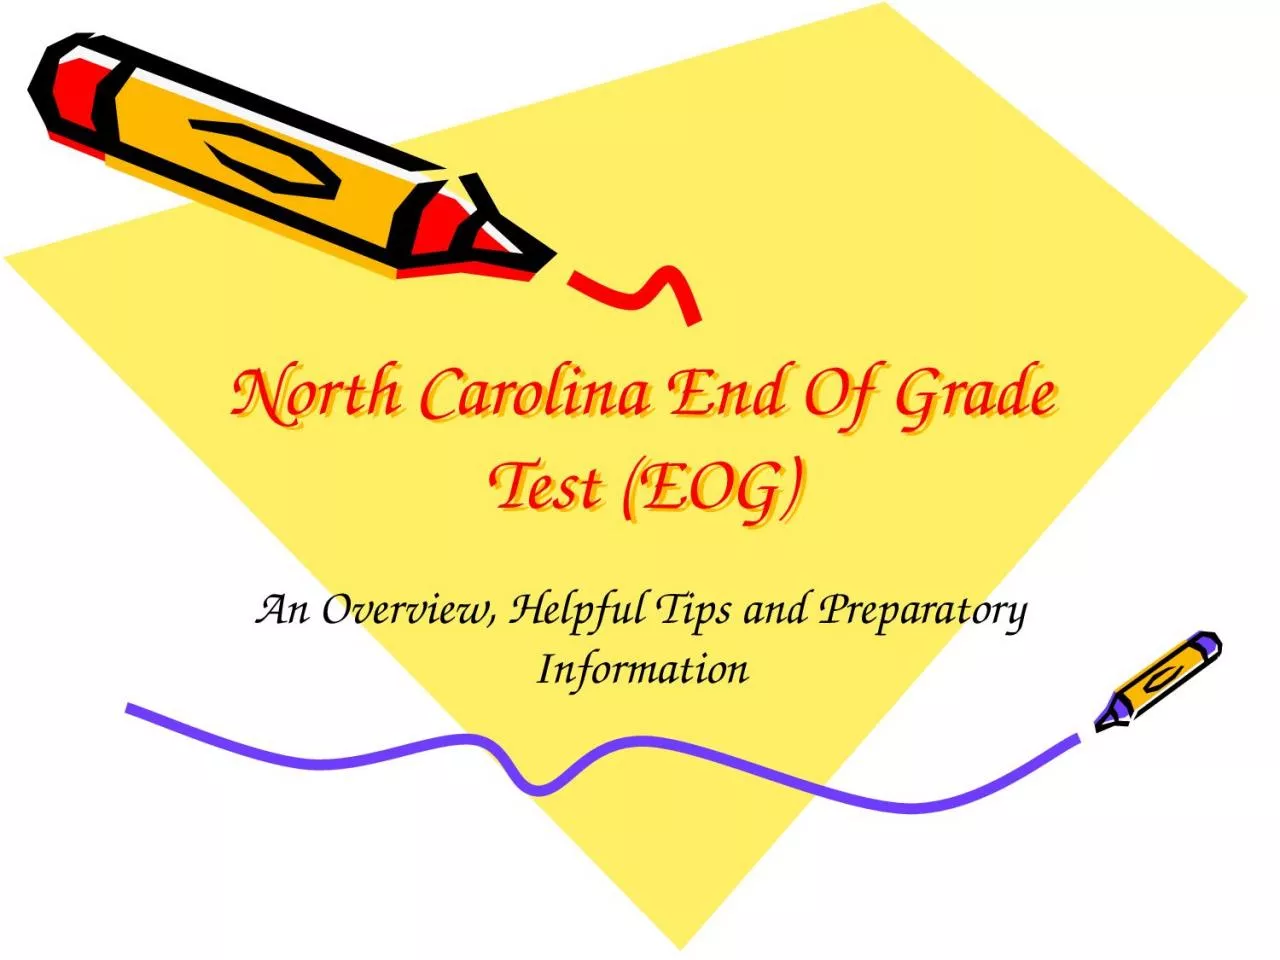 North Carolina End Of Grade Test (EOG)